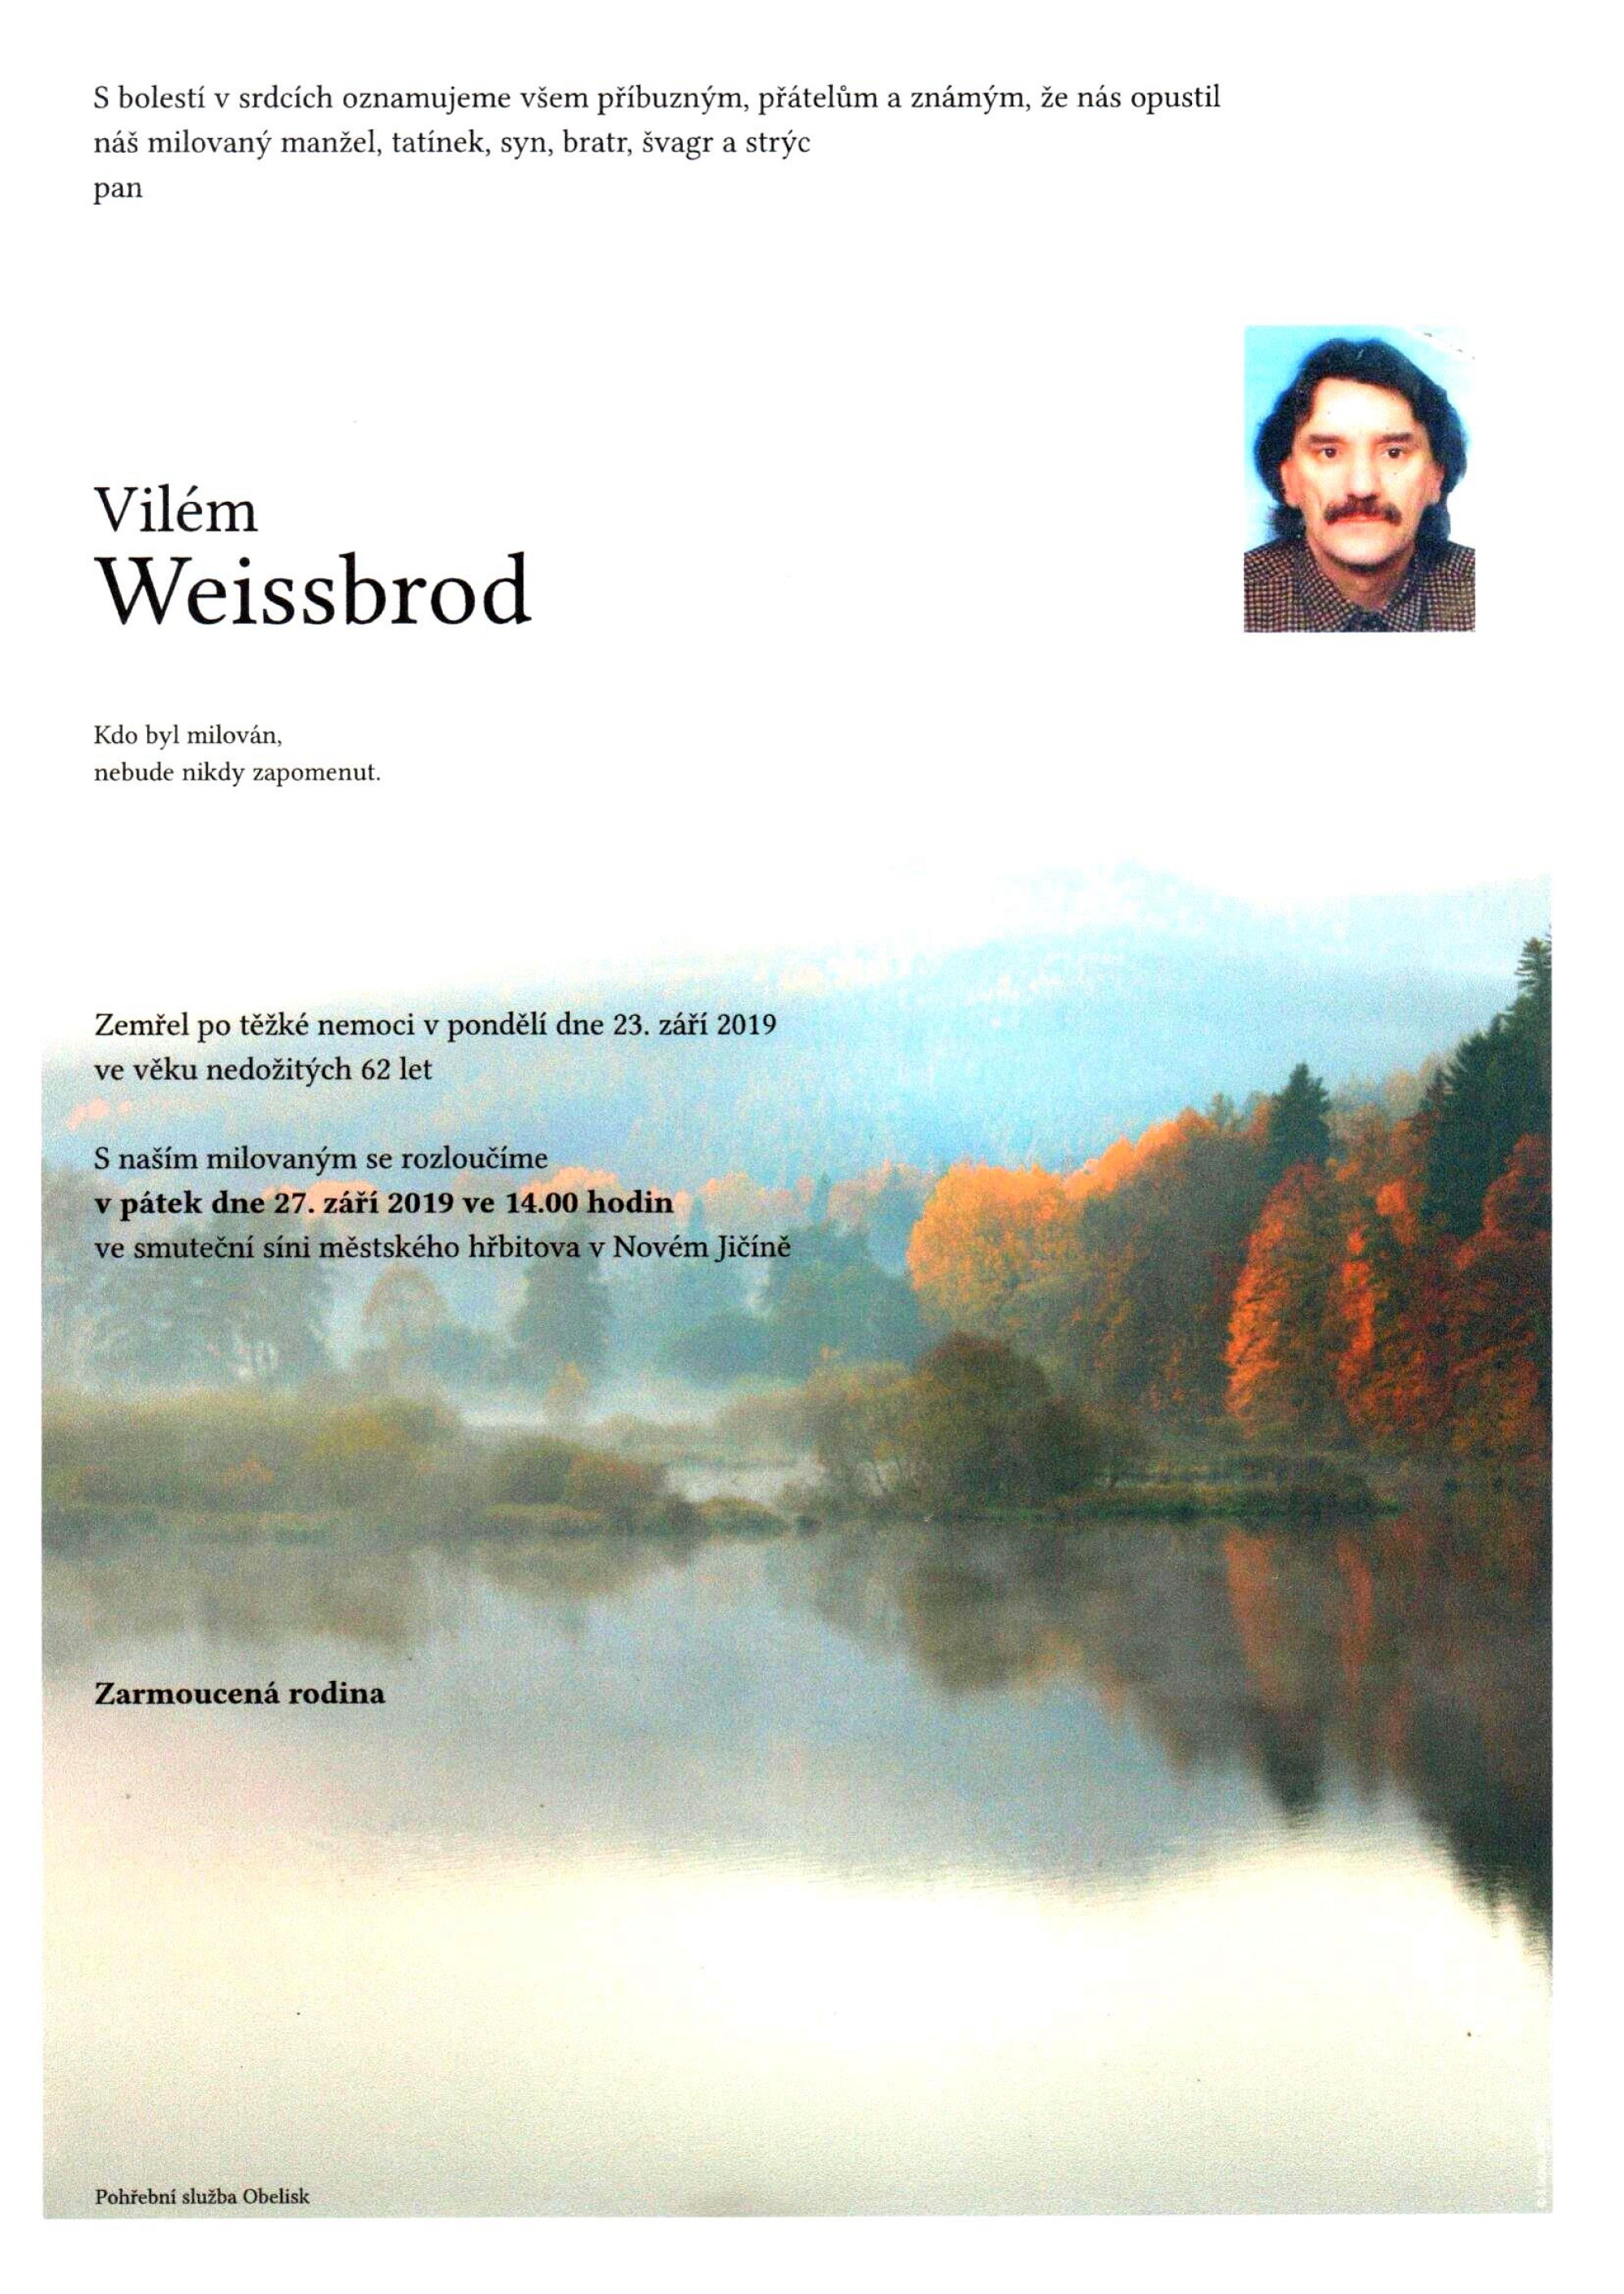 Vilém Weissbrod